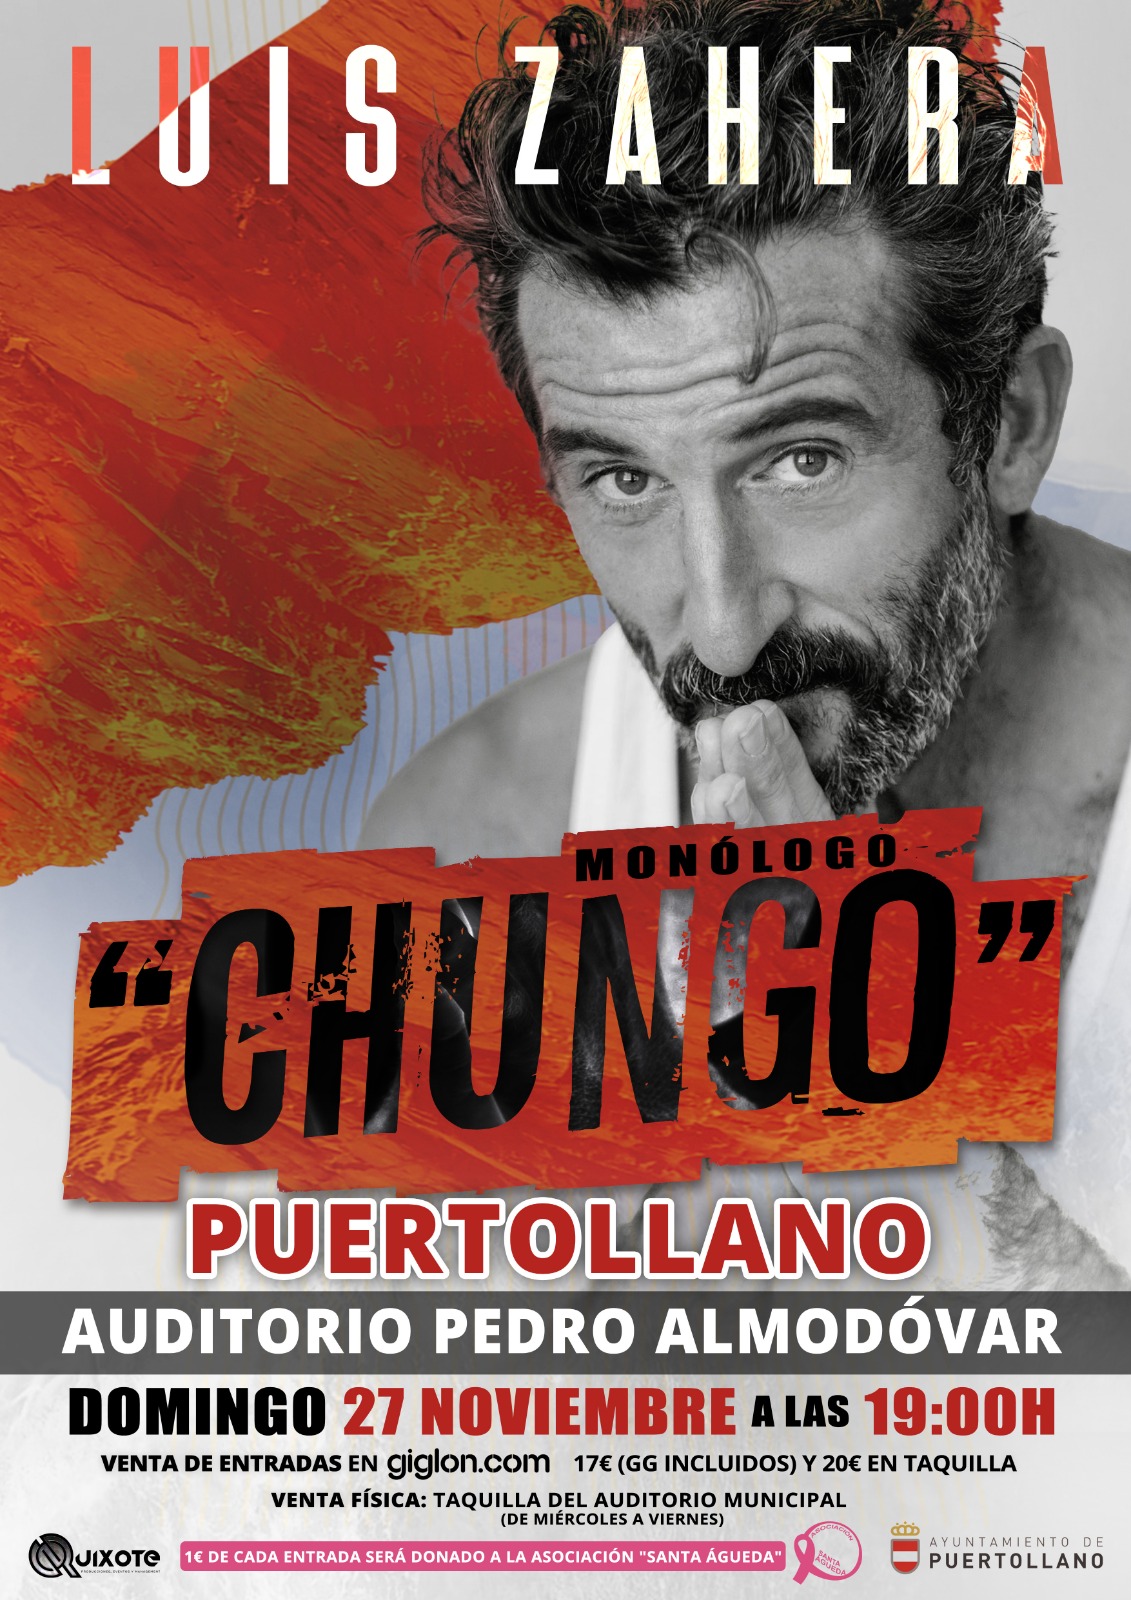 Teatro-Monólogo. Espectáculo “CHUNGO”, a cargo del actor LUIS ZAHERA